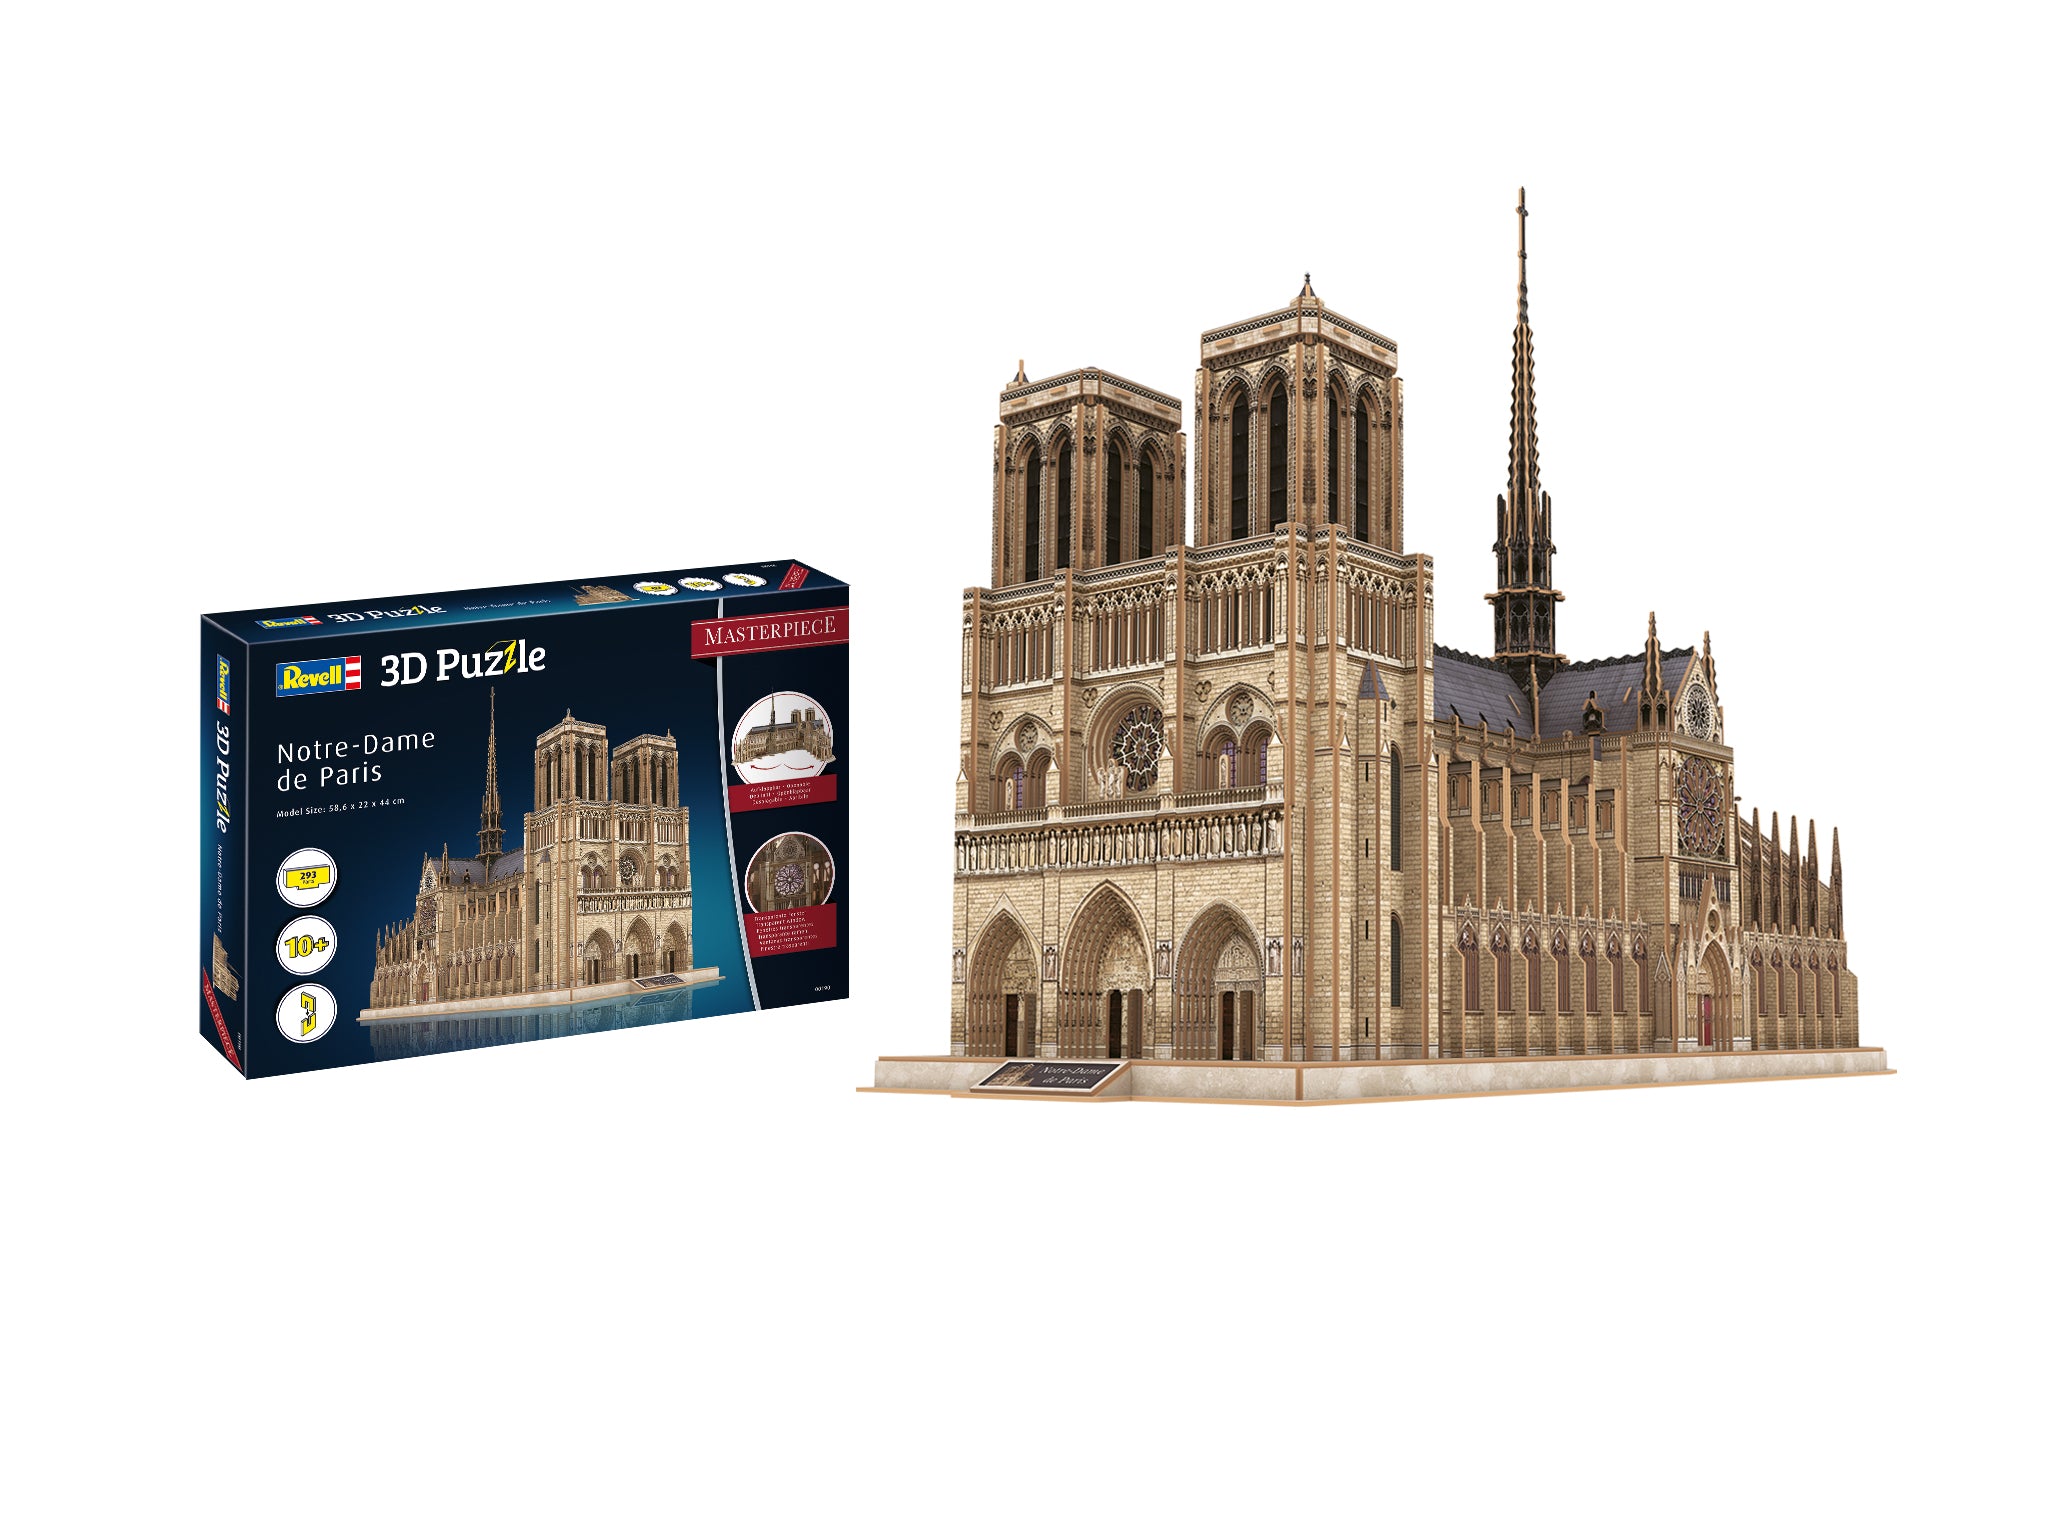 3D Puzzle Revell Notre-Dame de Paris - Masterpiece Edition